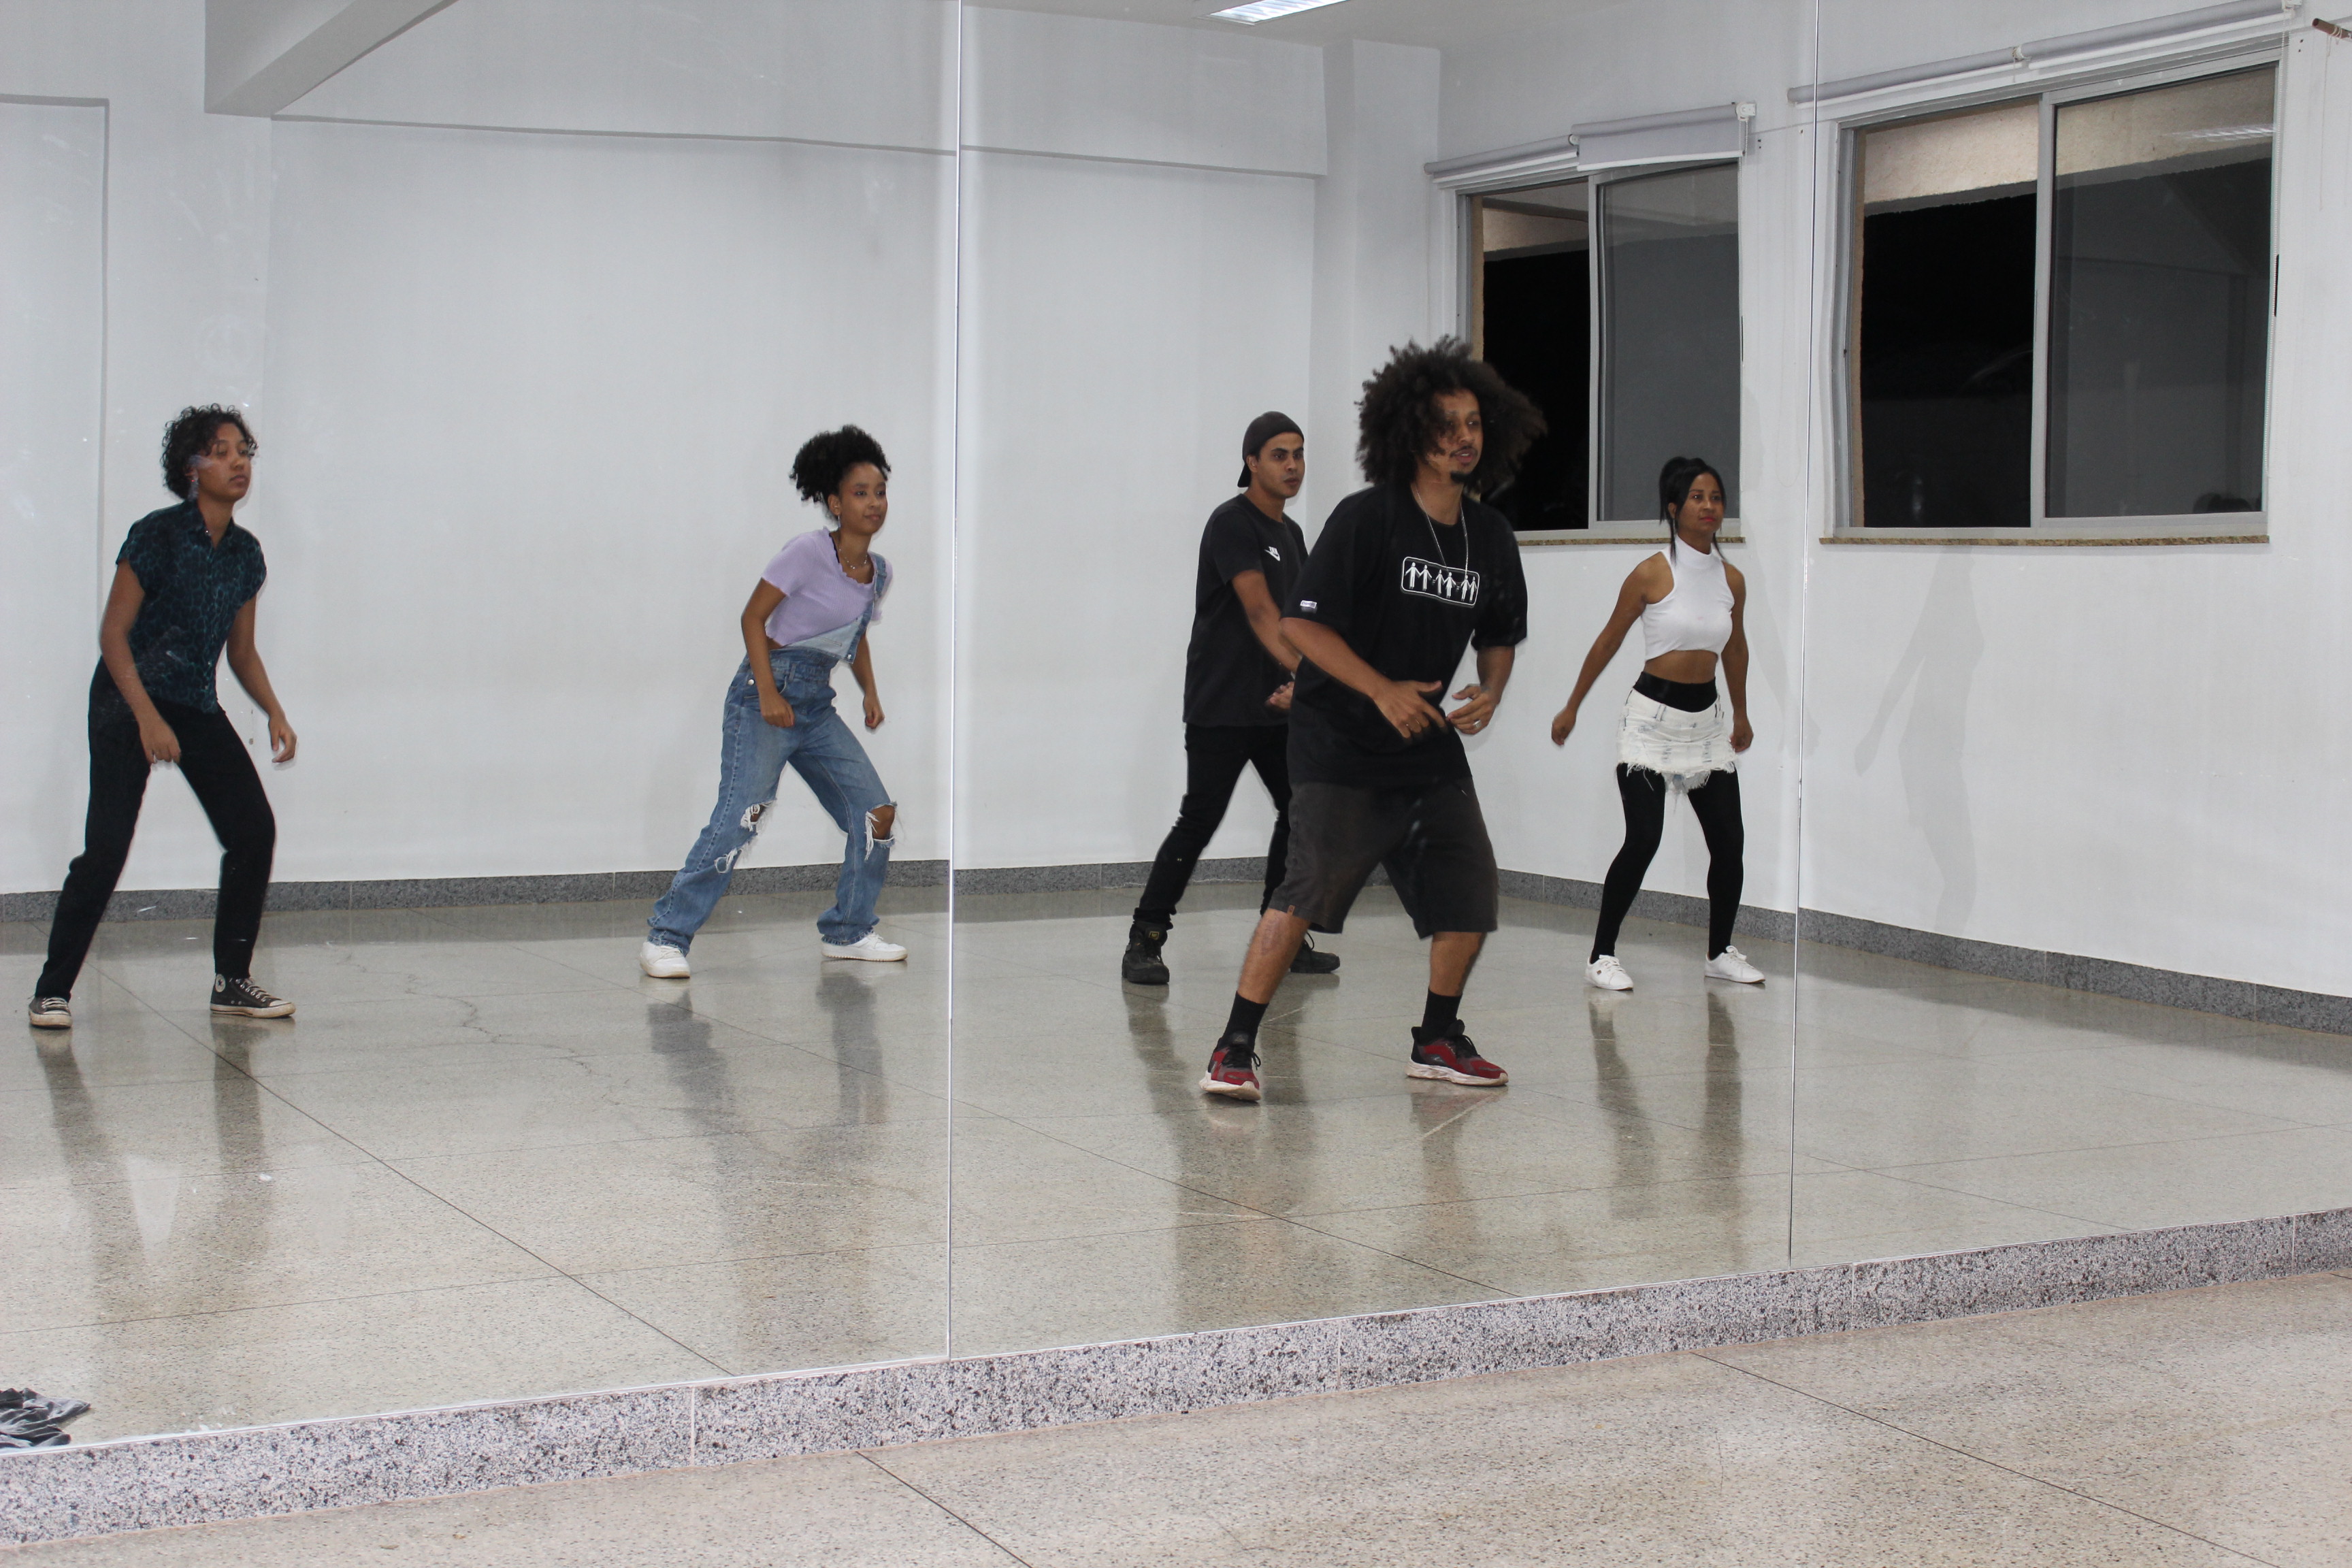 Oficina de hip hop ministrada por Allan Silva, estudante do curso de licenciatura em Dança 